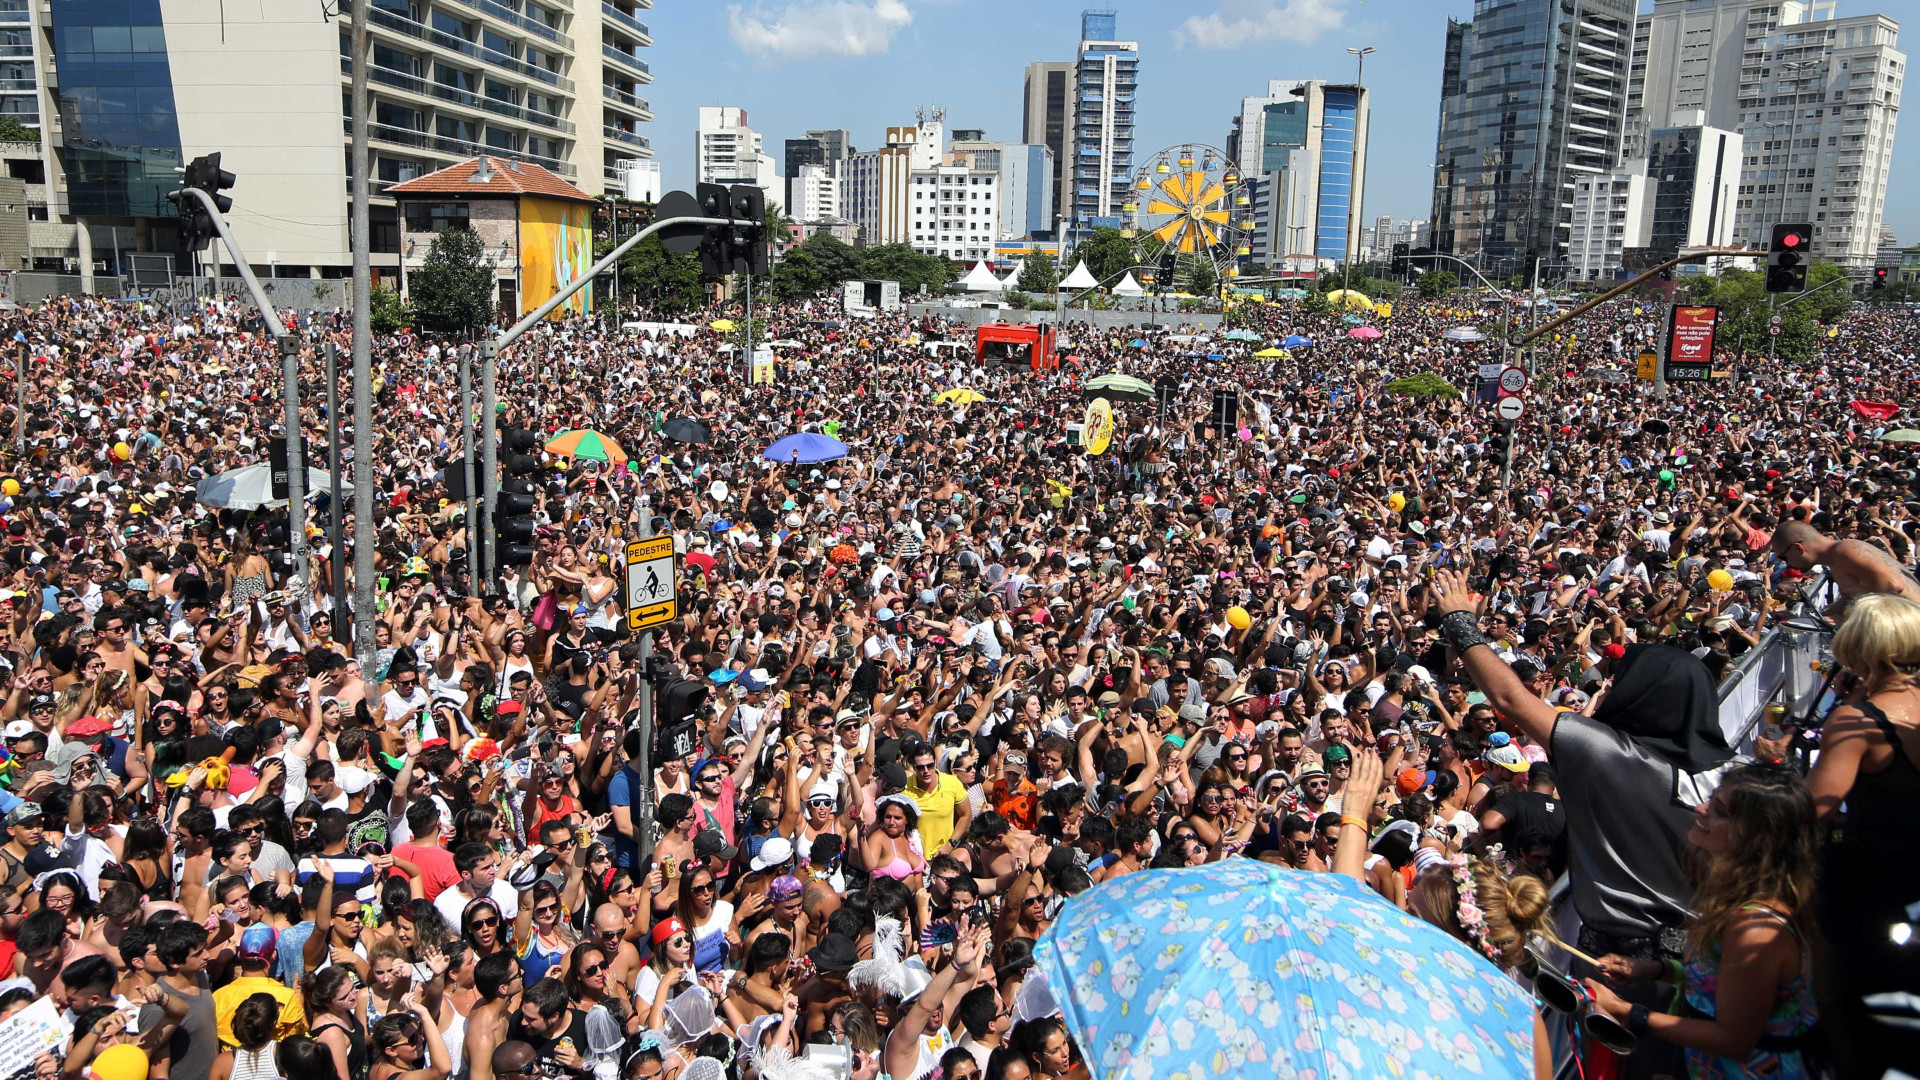 Rotina de festas no carnaval exige cuidados com a saúde